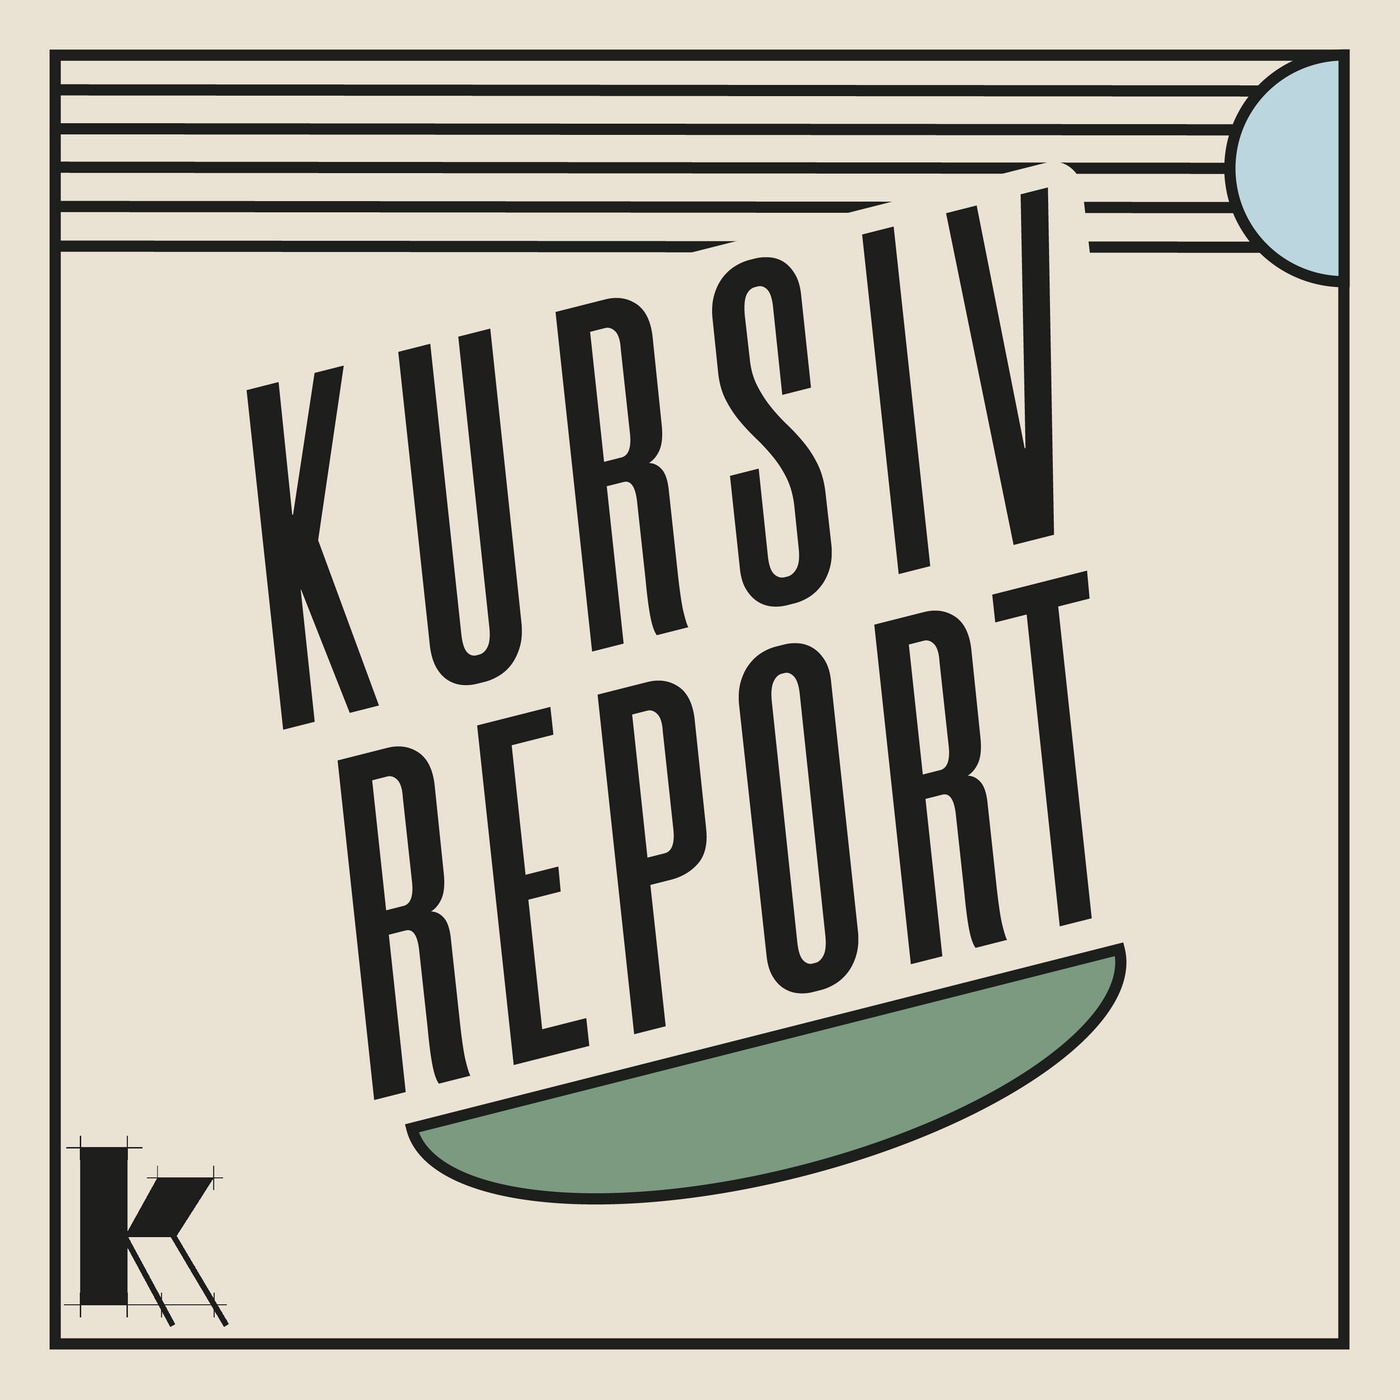 kursiv.report